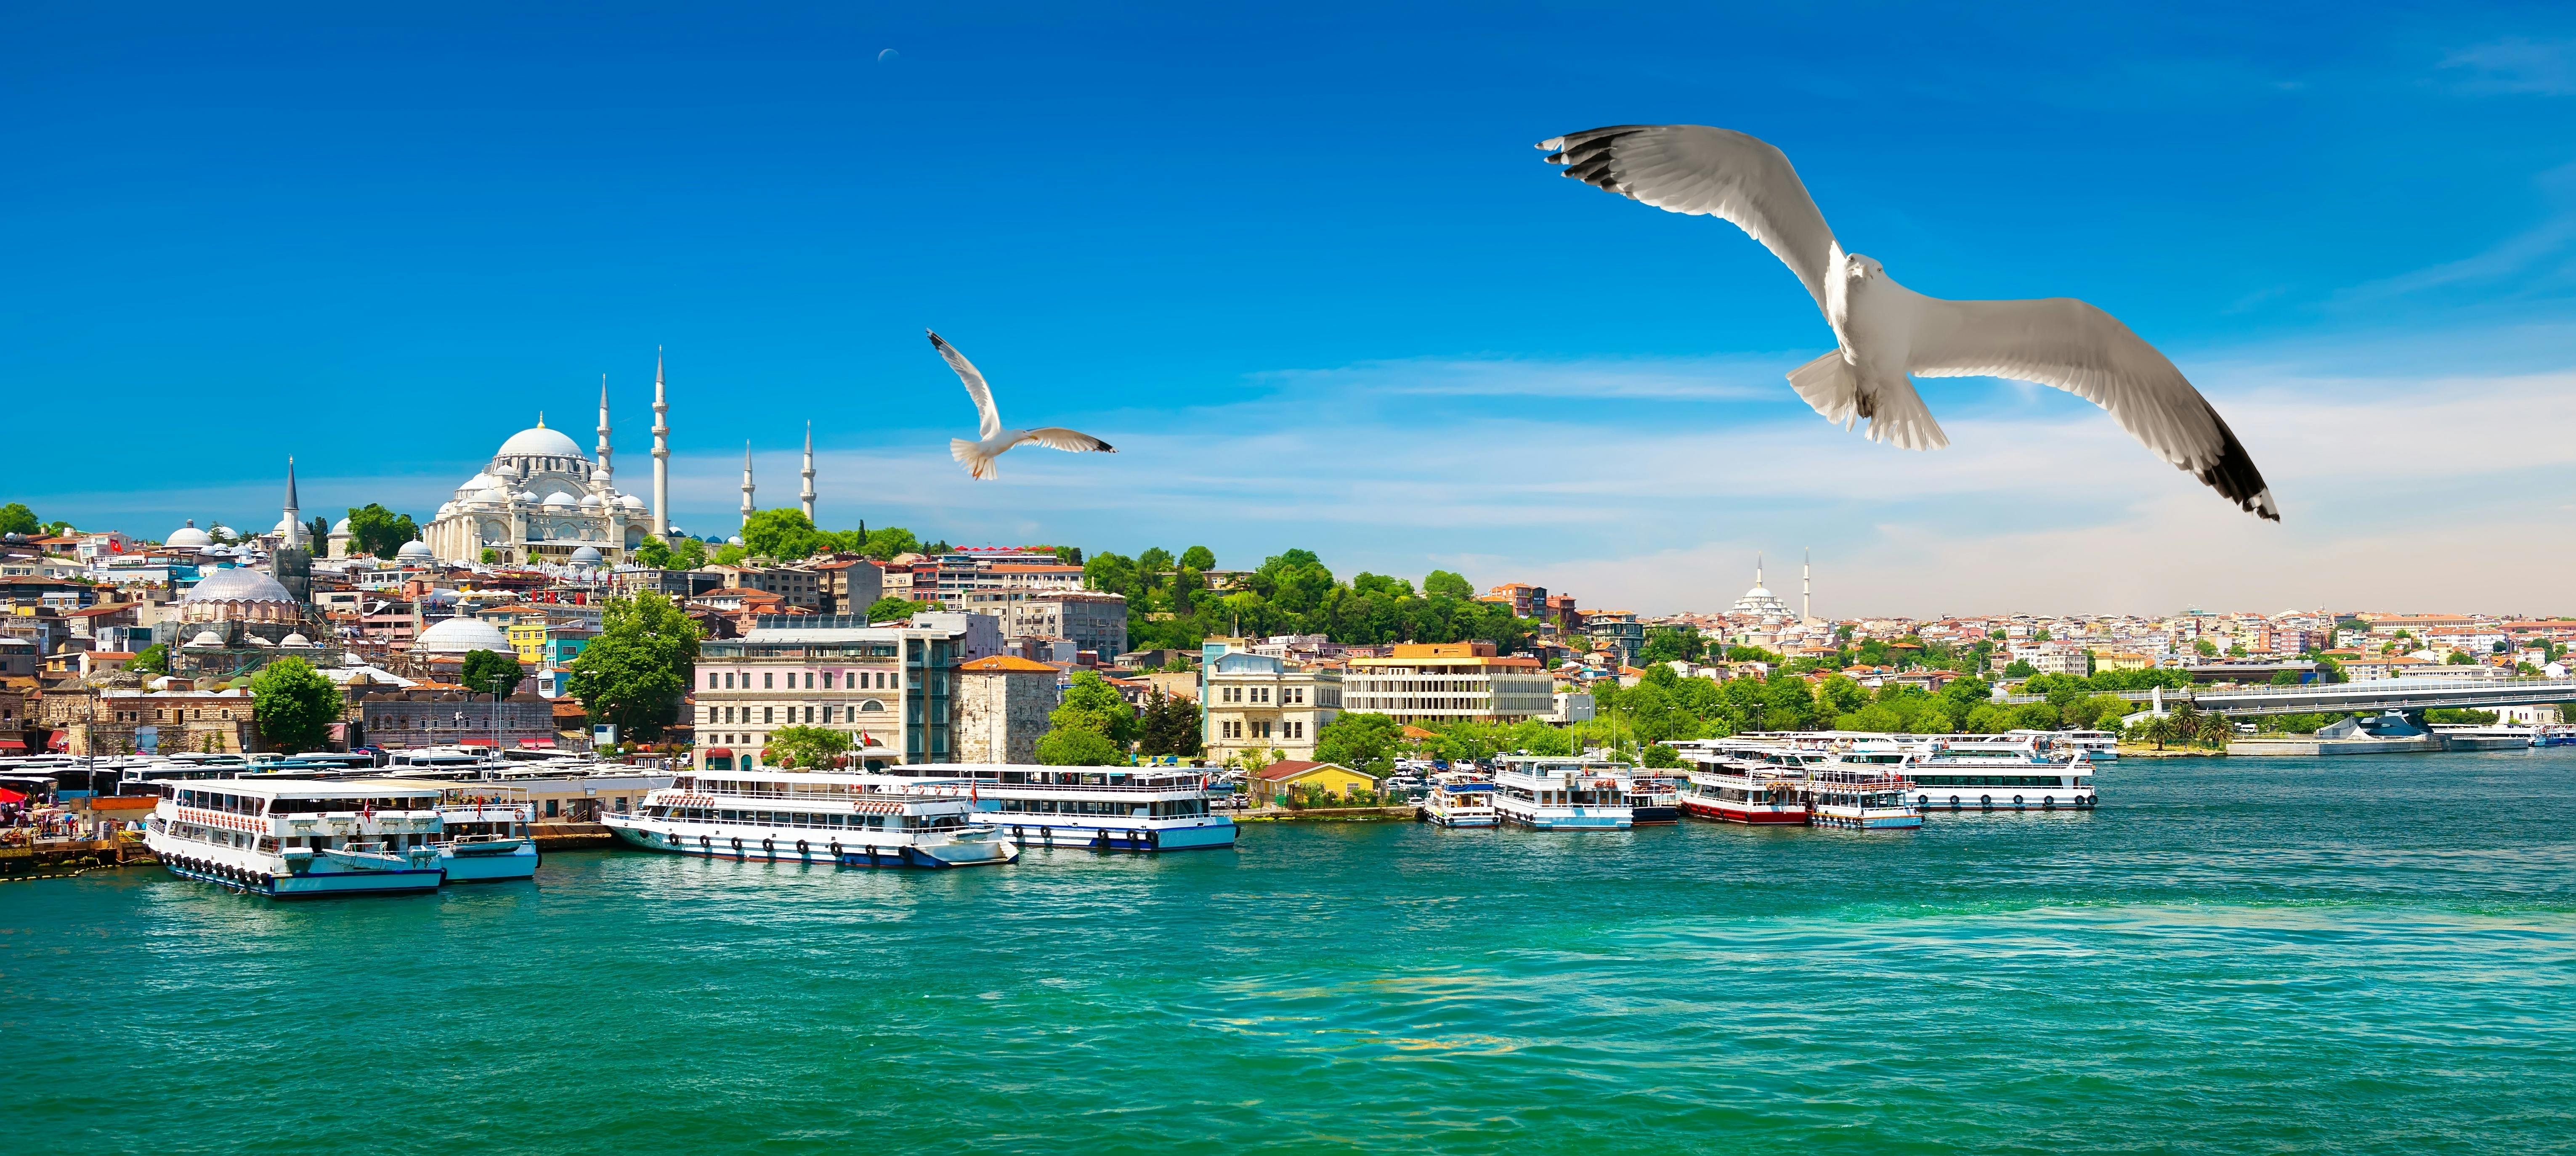 Entdecken Sie den Bosporus, die Blaue Moschee, den Topkapi-Palast und die Basilika-Zisterne